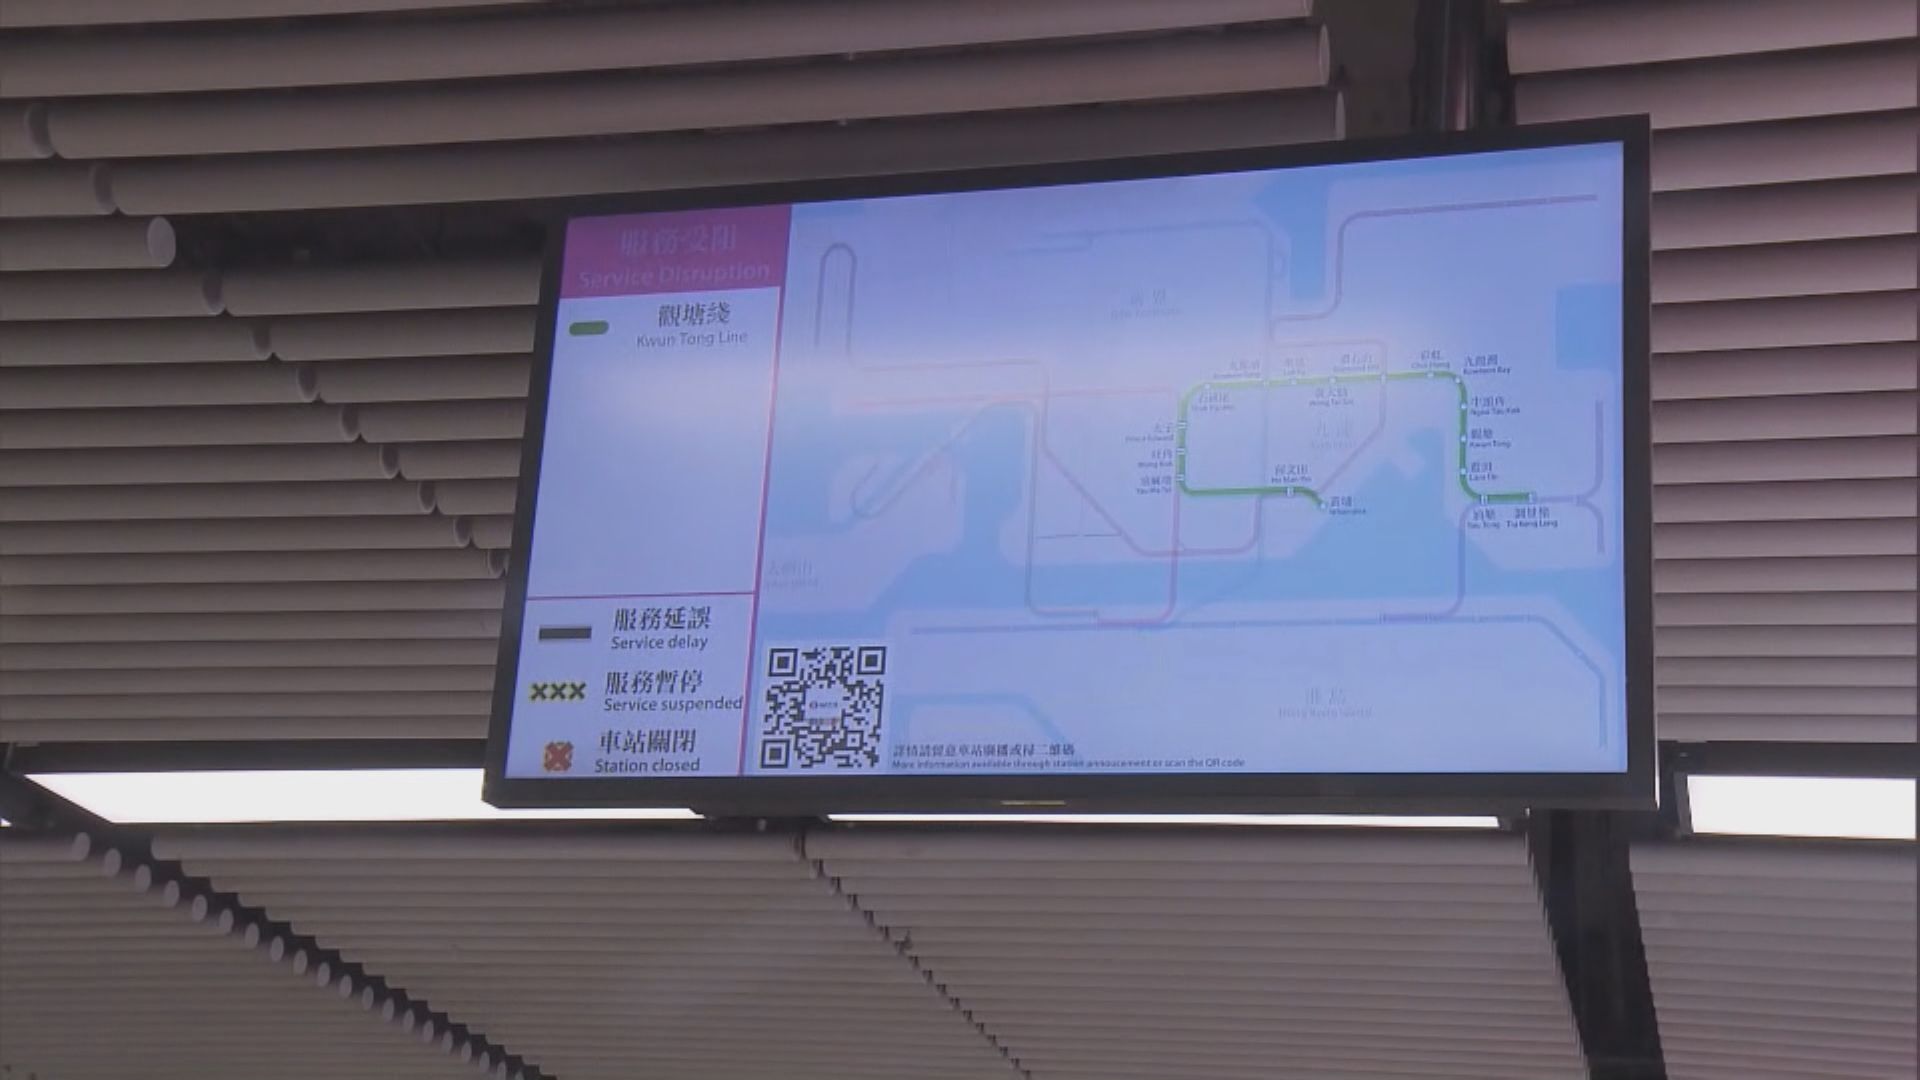 何文田站信號故障 觀塘綫需額外10至15分鐘行車時間